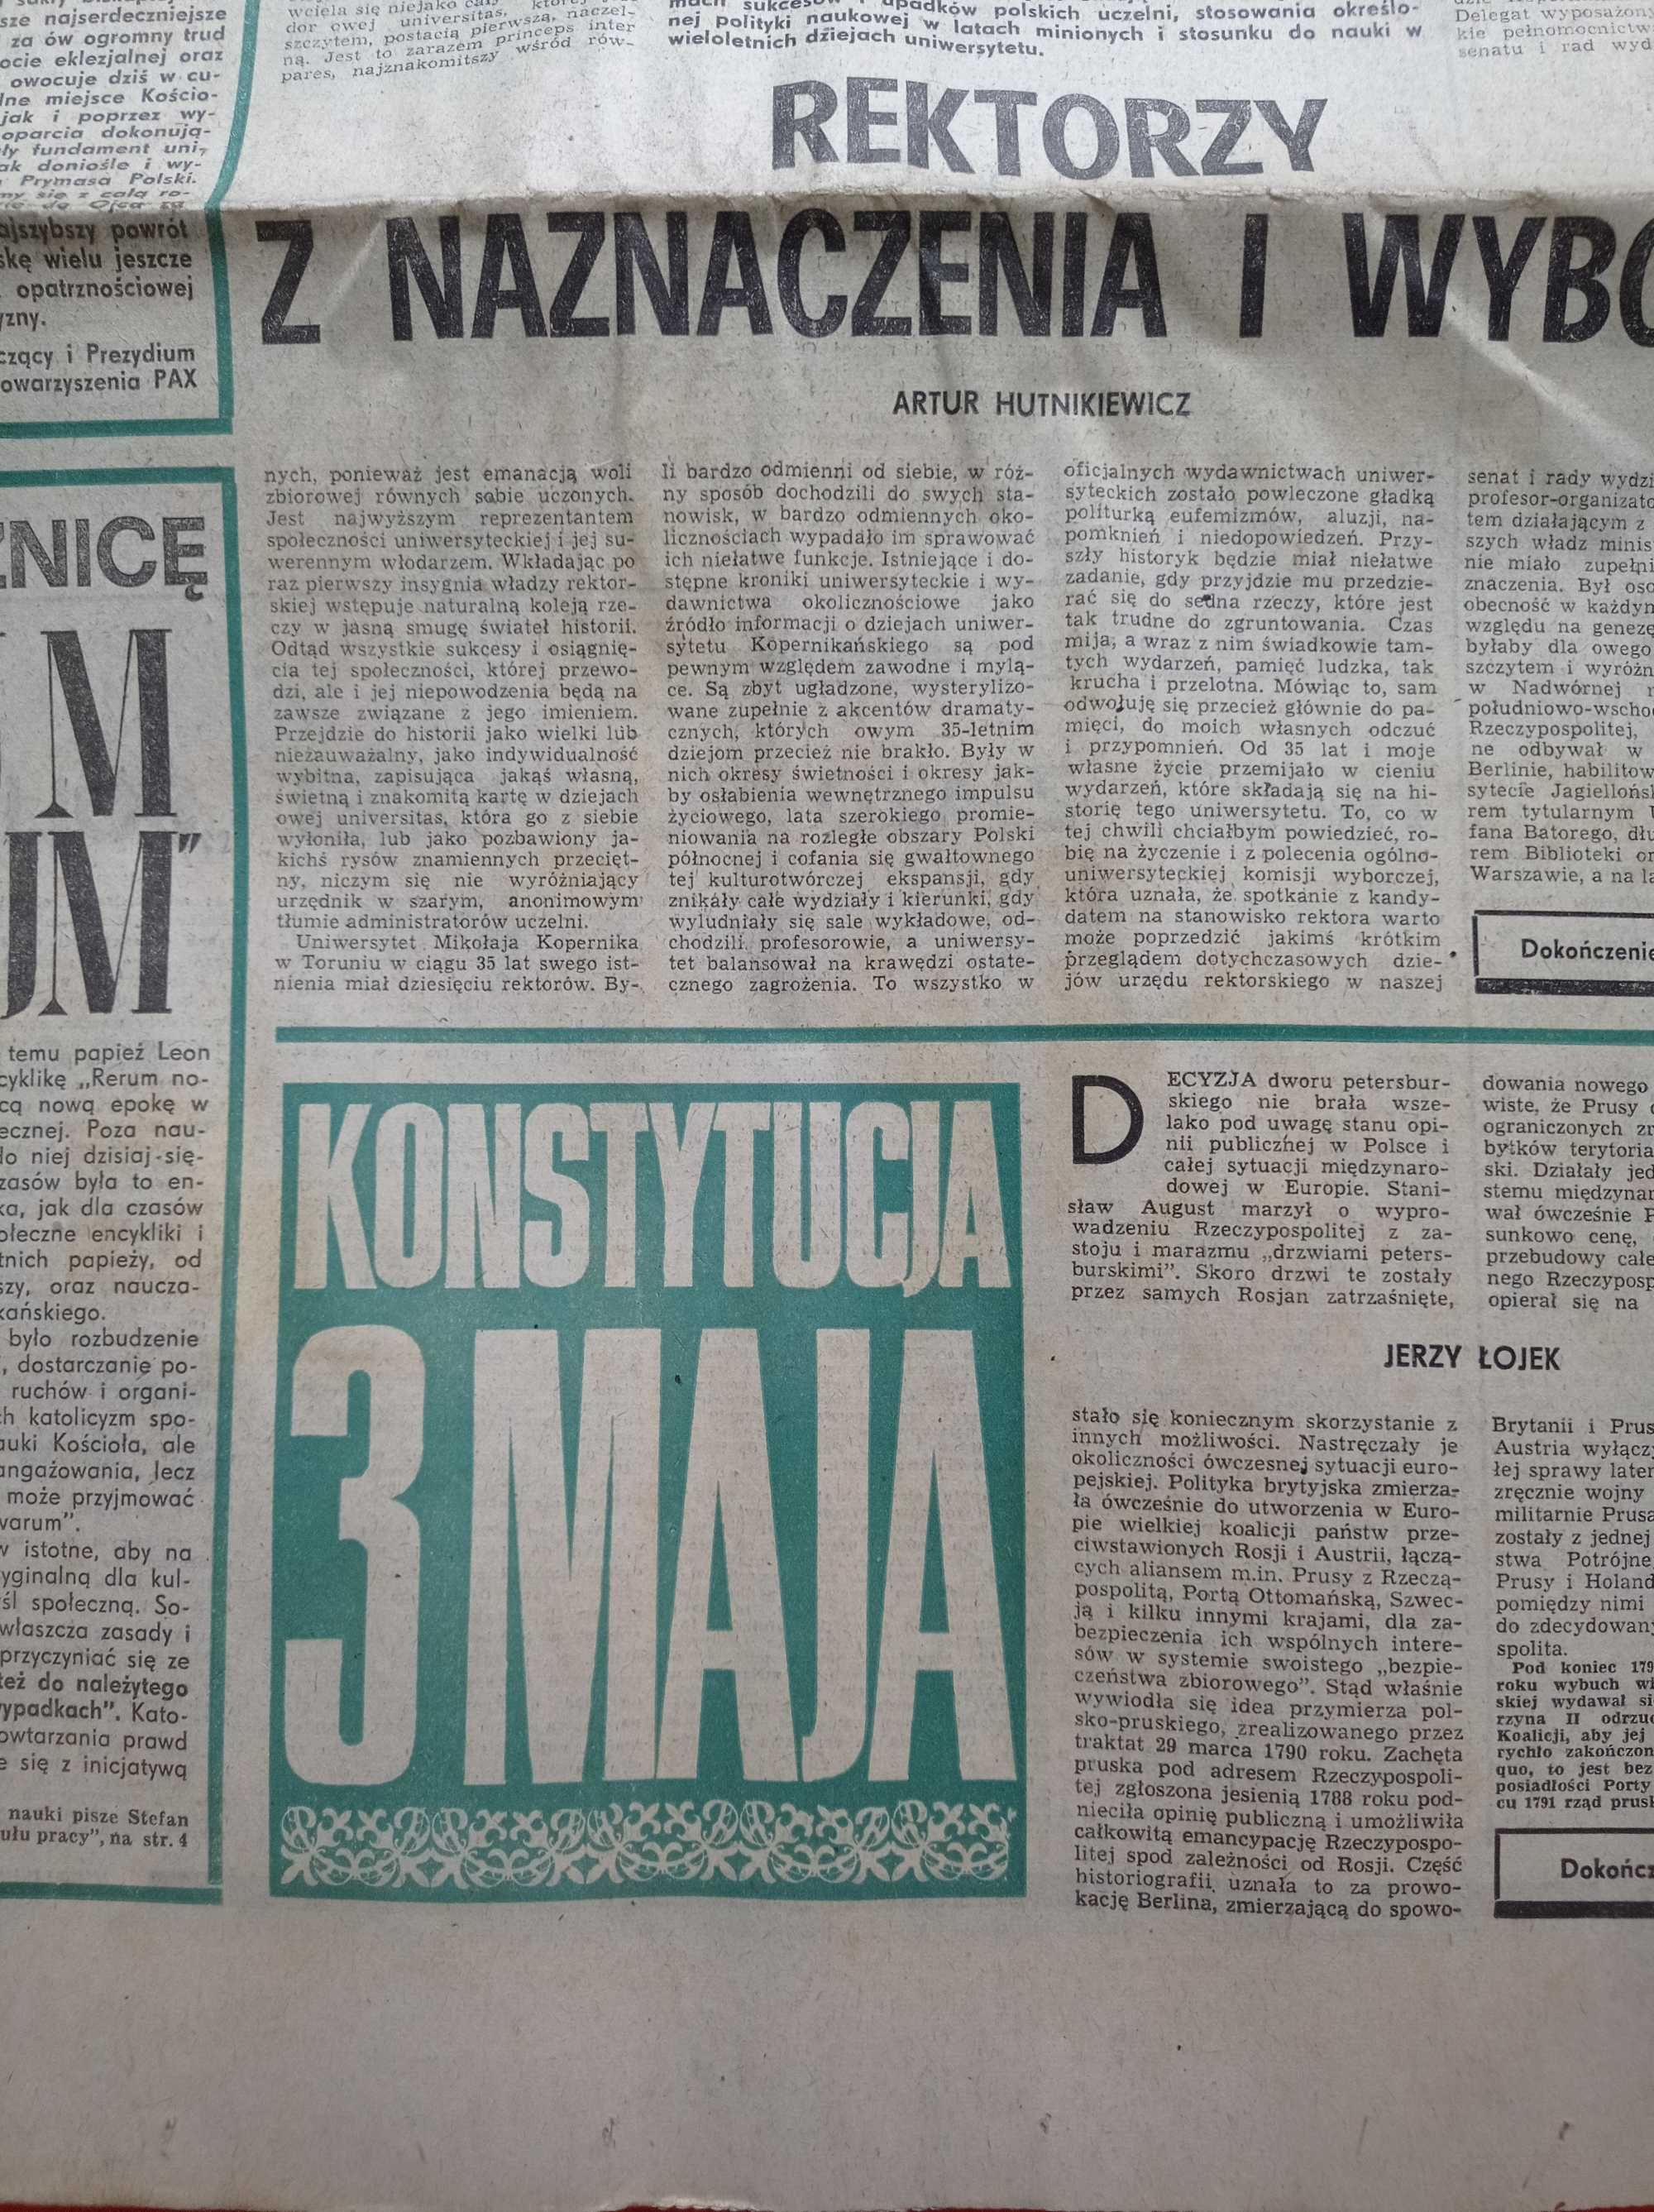 Kierunki tygodnik nr 20 / 1981; 17 maja 1981